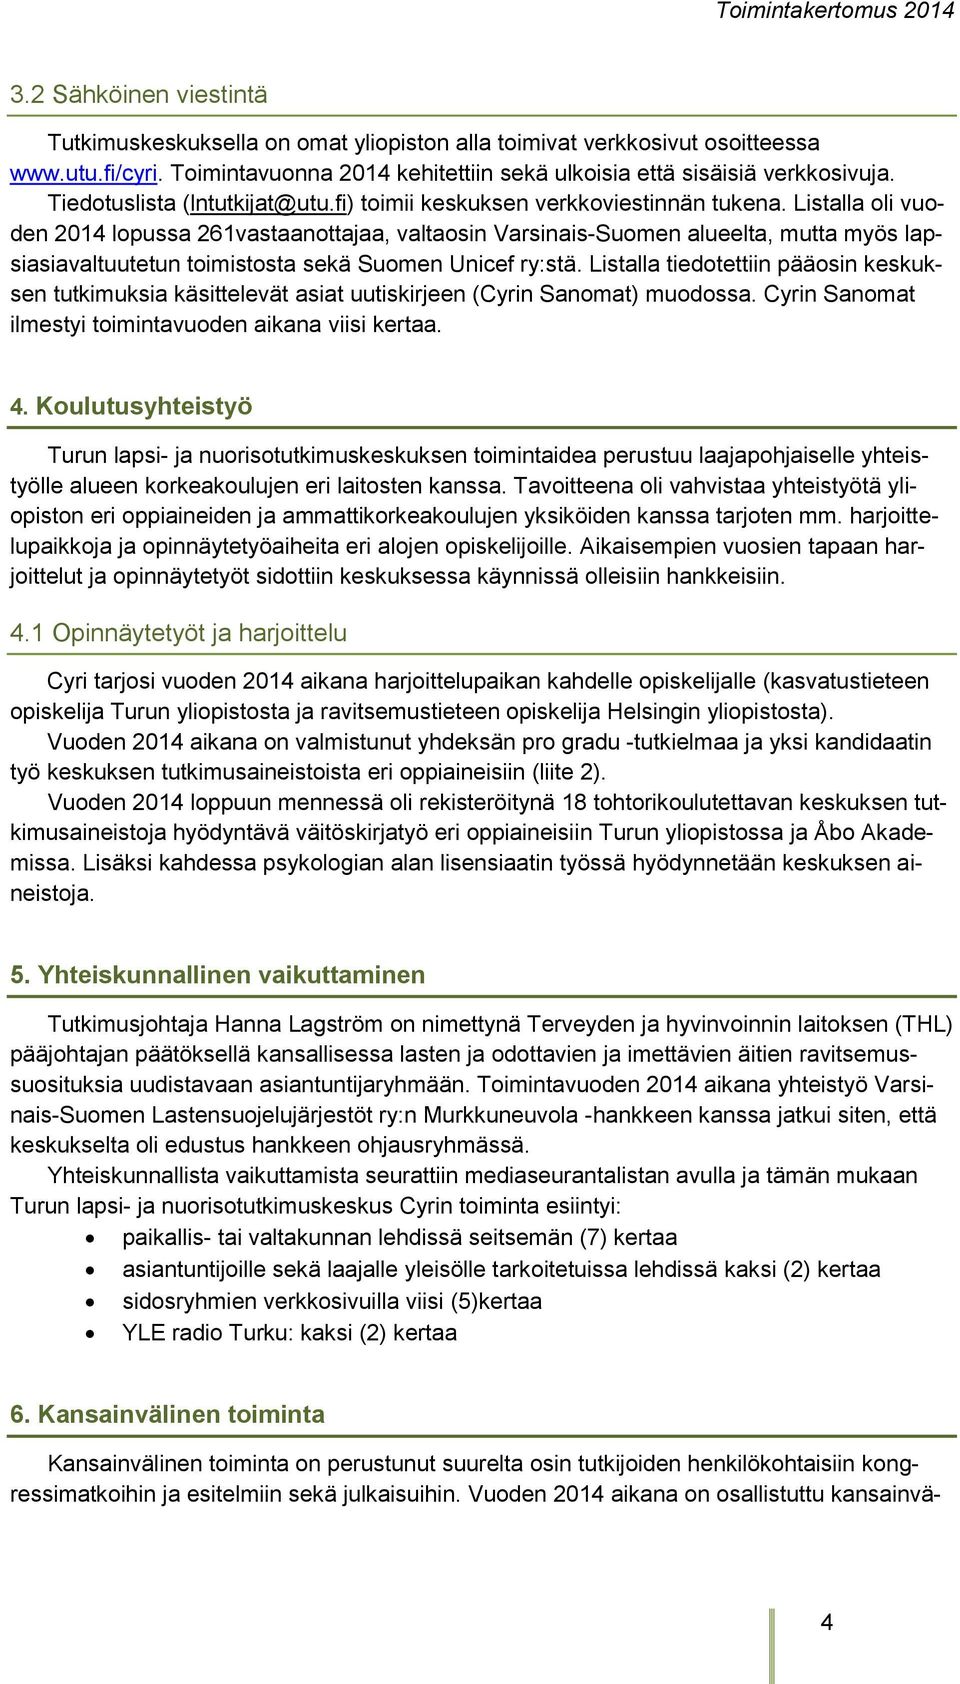 Listalla oli vuoden 2014 lopussa 261vastaanottajaa, valtaosin Varsinais-Suomen alueelta, mutta myös lapsiasiavaltuutetun toimistosta sekä Suomen Unicef ry:stä.